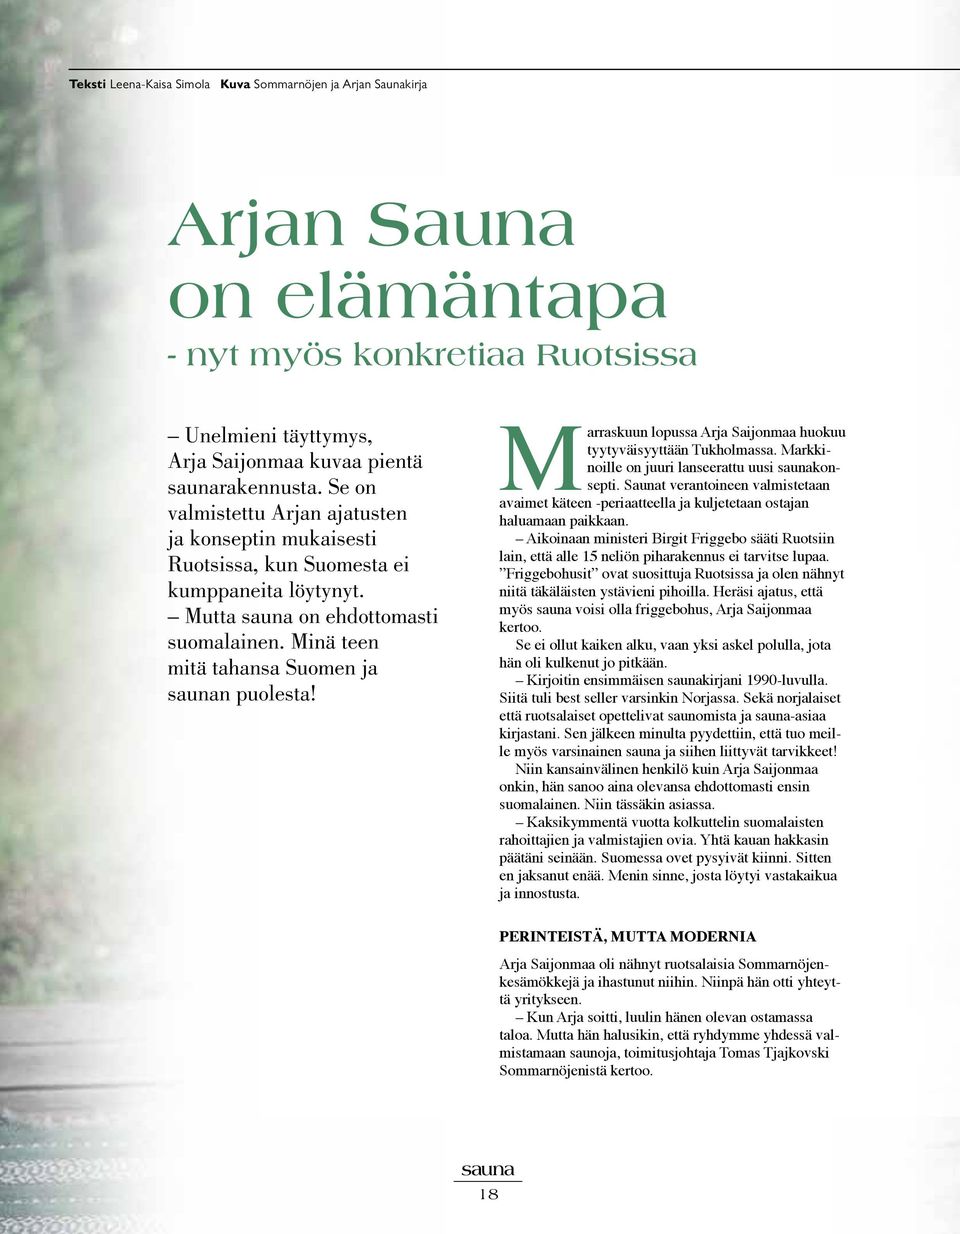 Marraskuun lopussa Arja Saijonmaa huokuu tyytyväisyyttään Tukholmassa. Markkinoille on juuri lanseerattu uusi saunakonsepti.